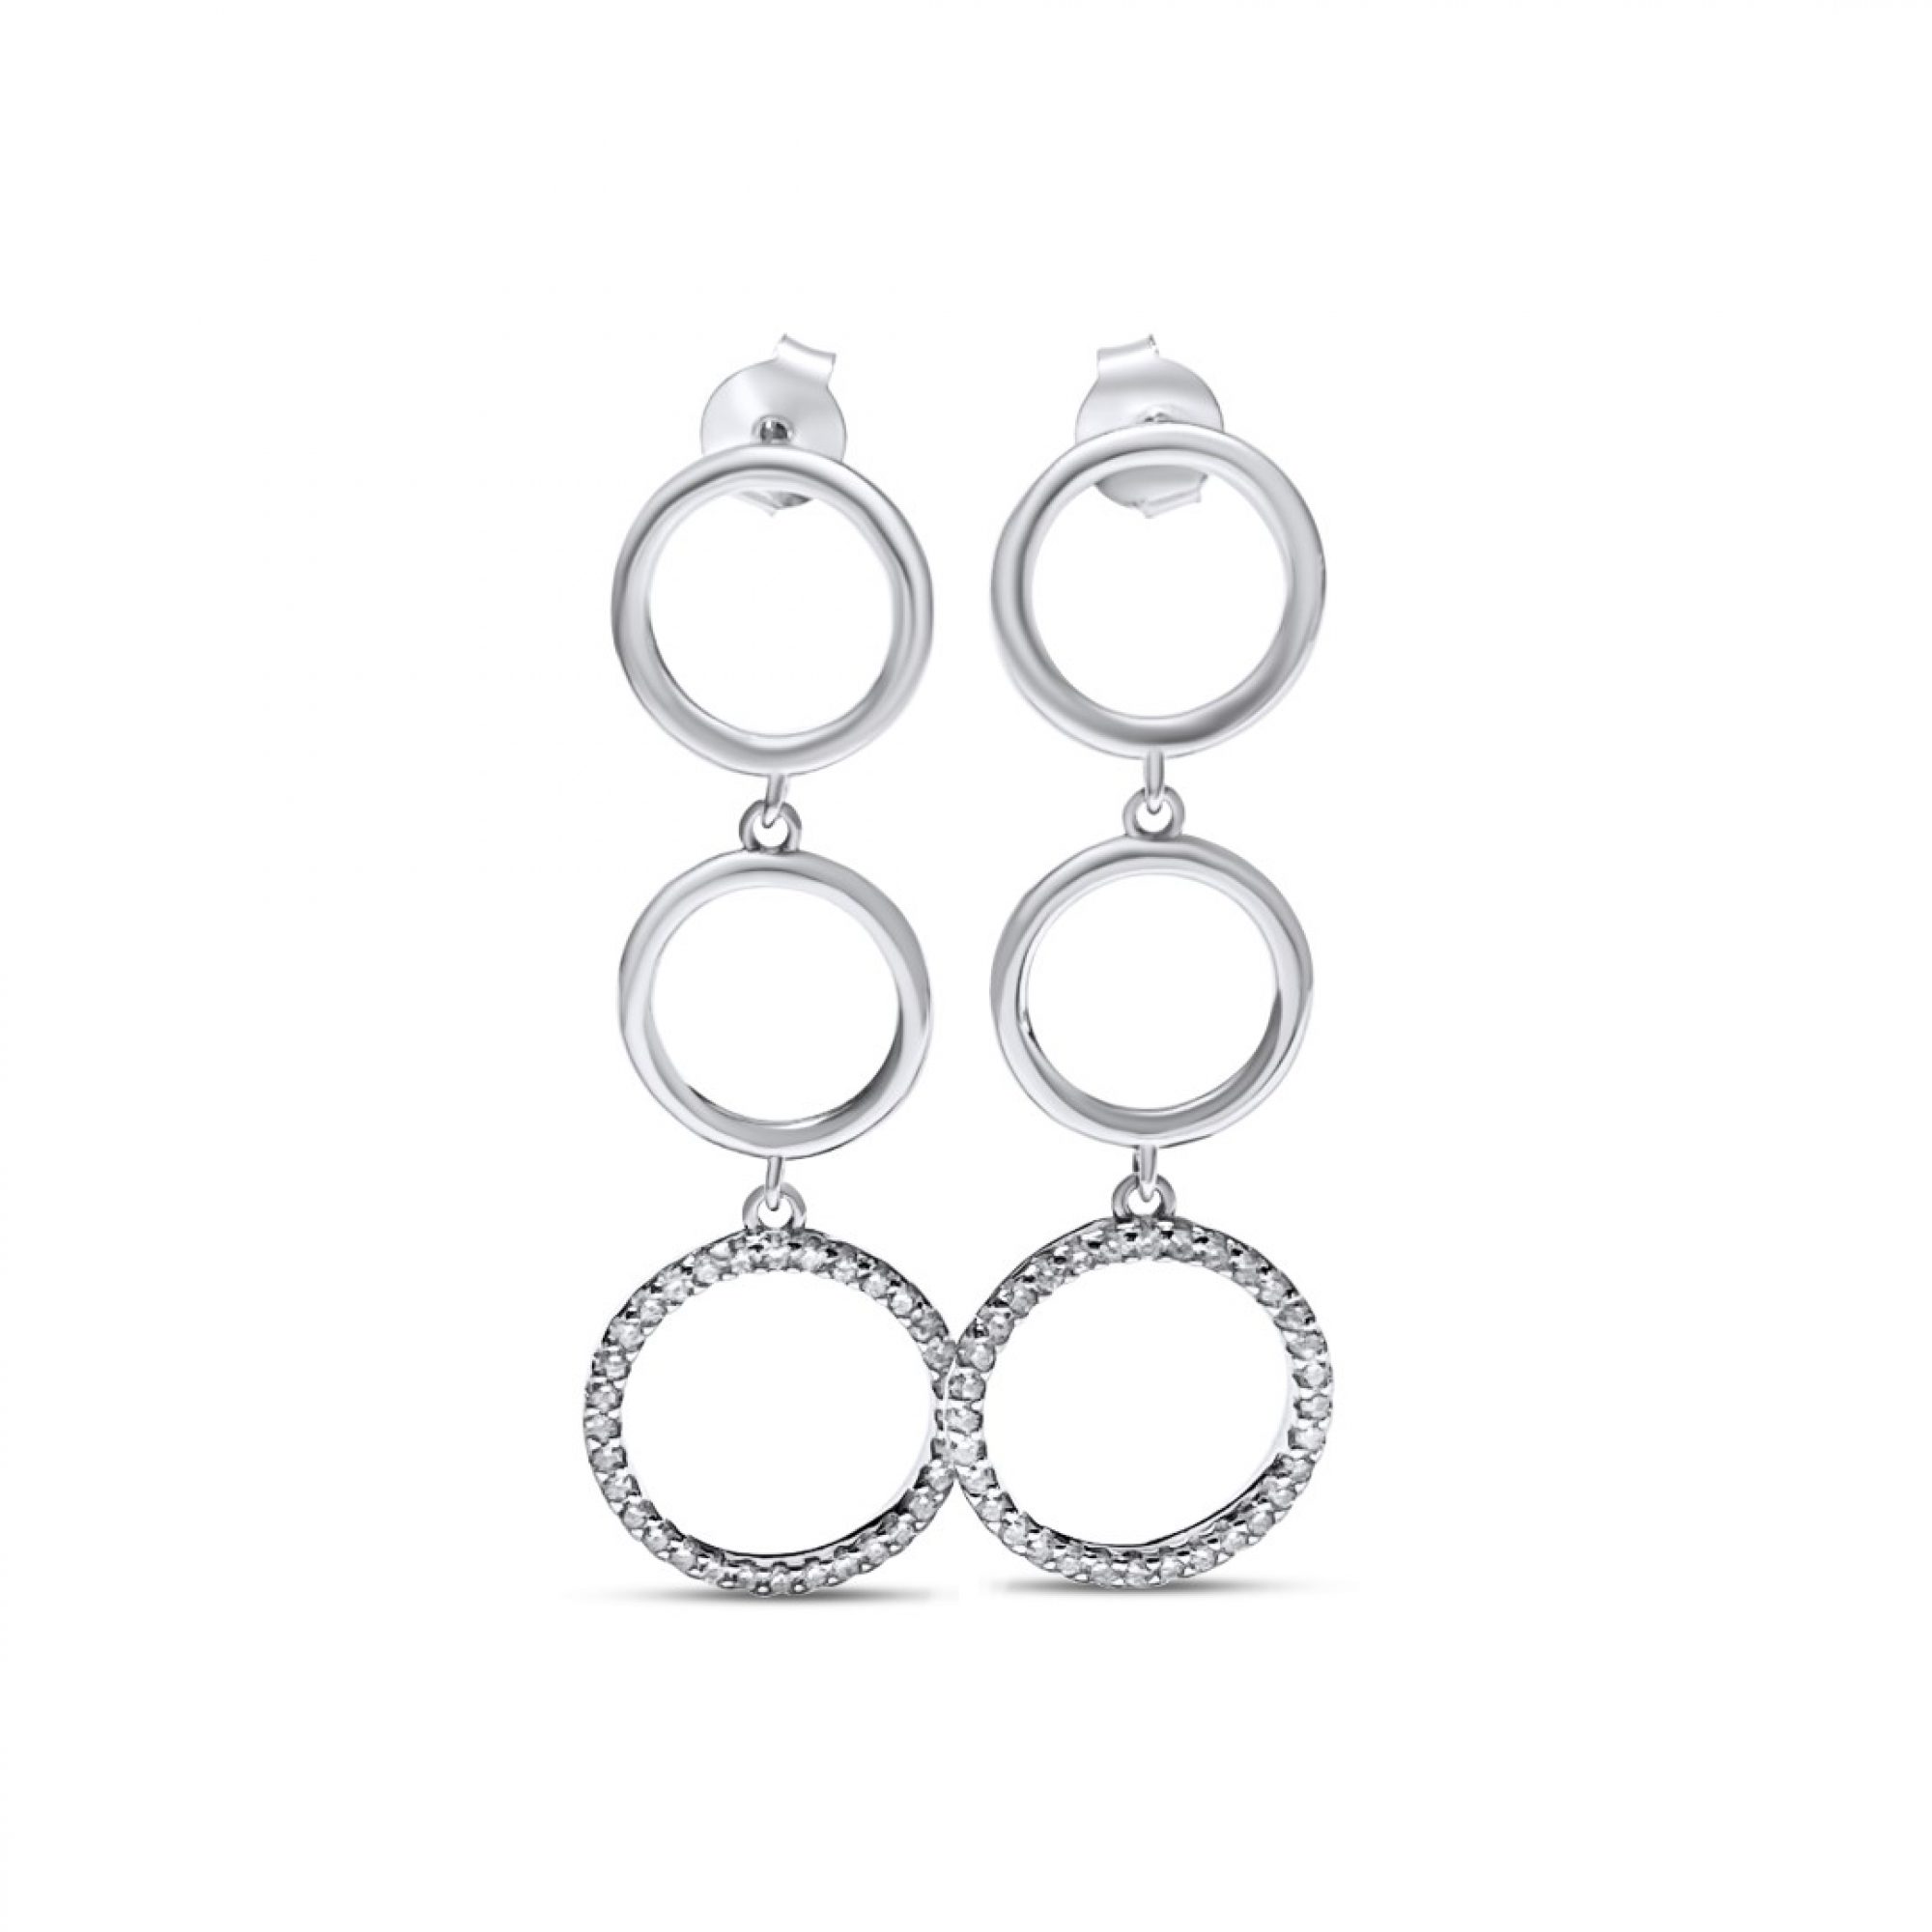 Silver dangle earrings with zircon stones